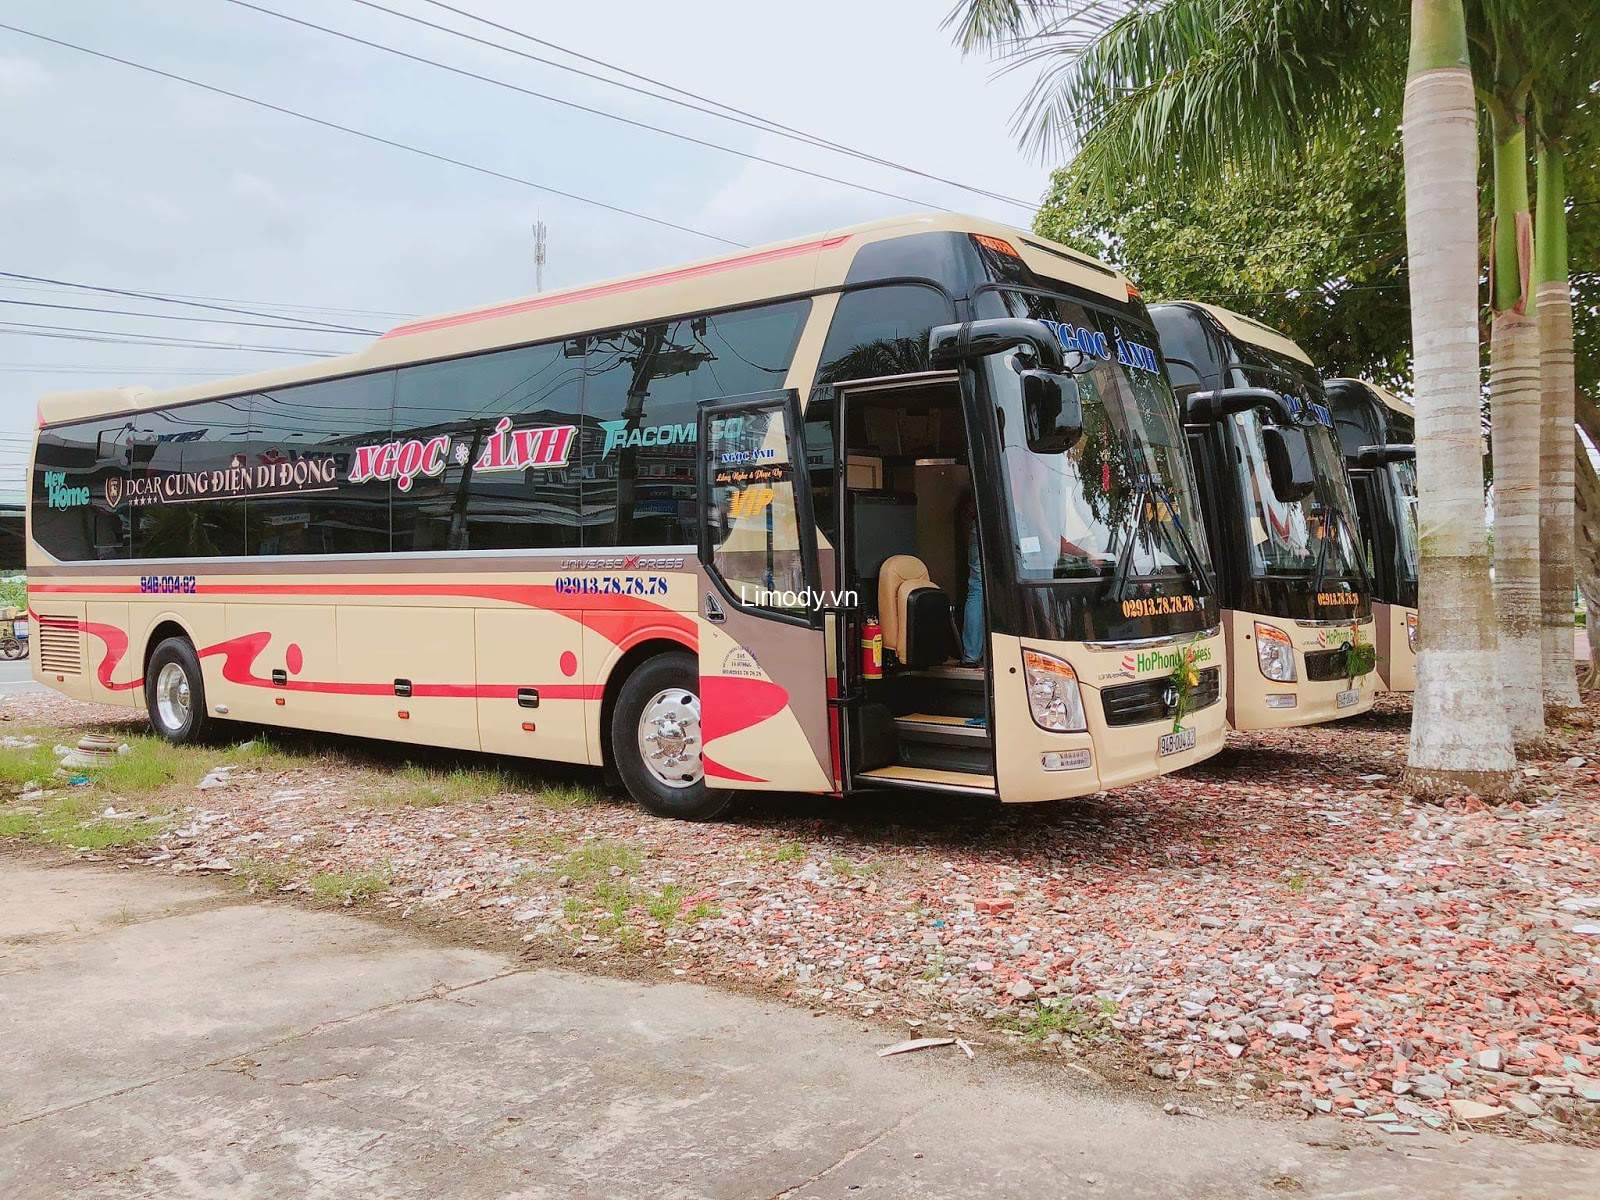 #27 Nhà xe Hà Nội Đà Nẵng xe khách limousine giường nằm chất lượng